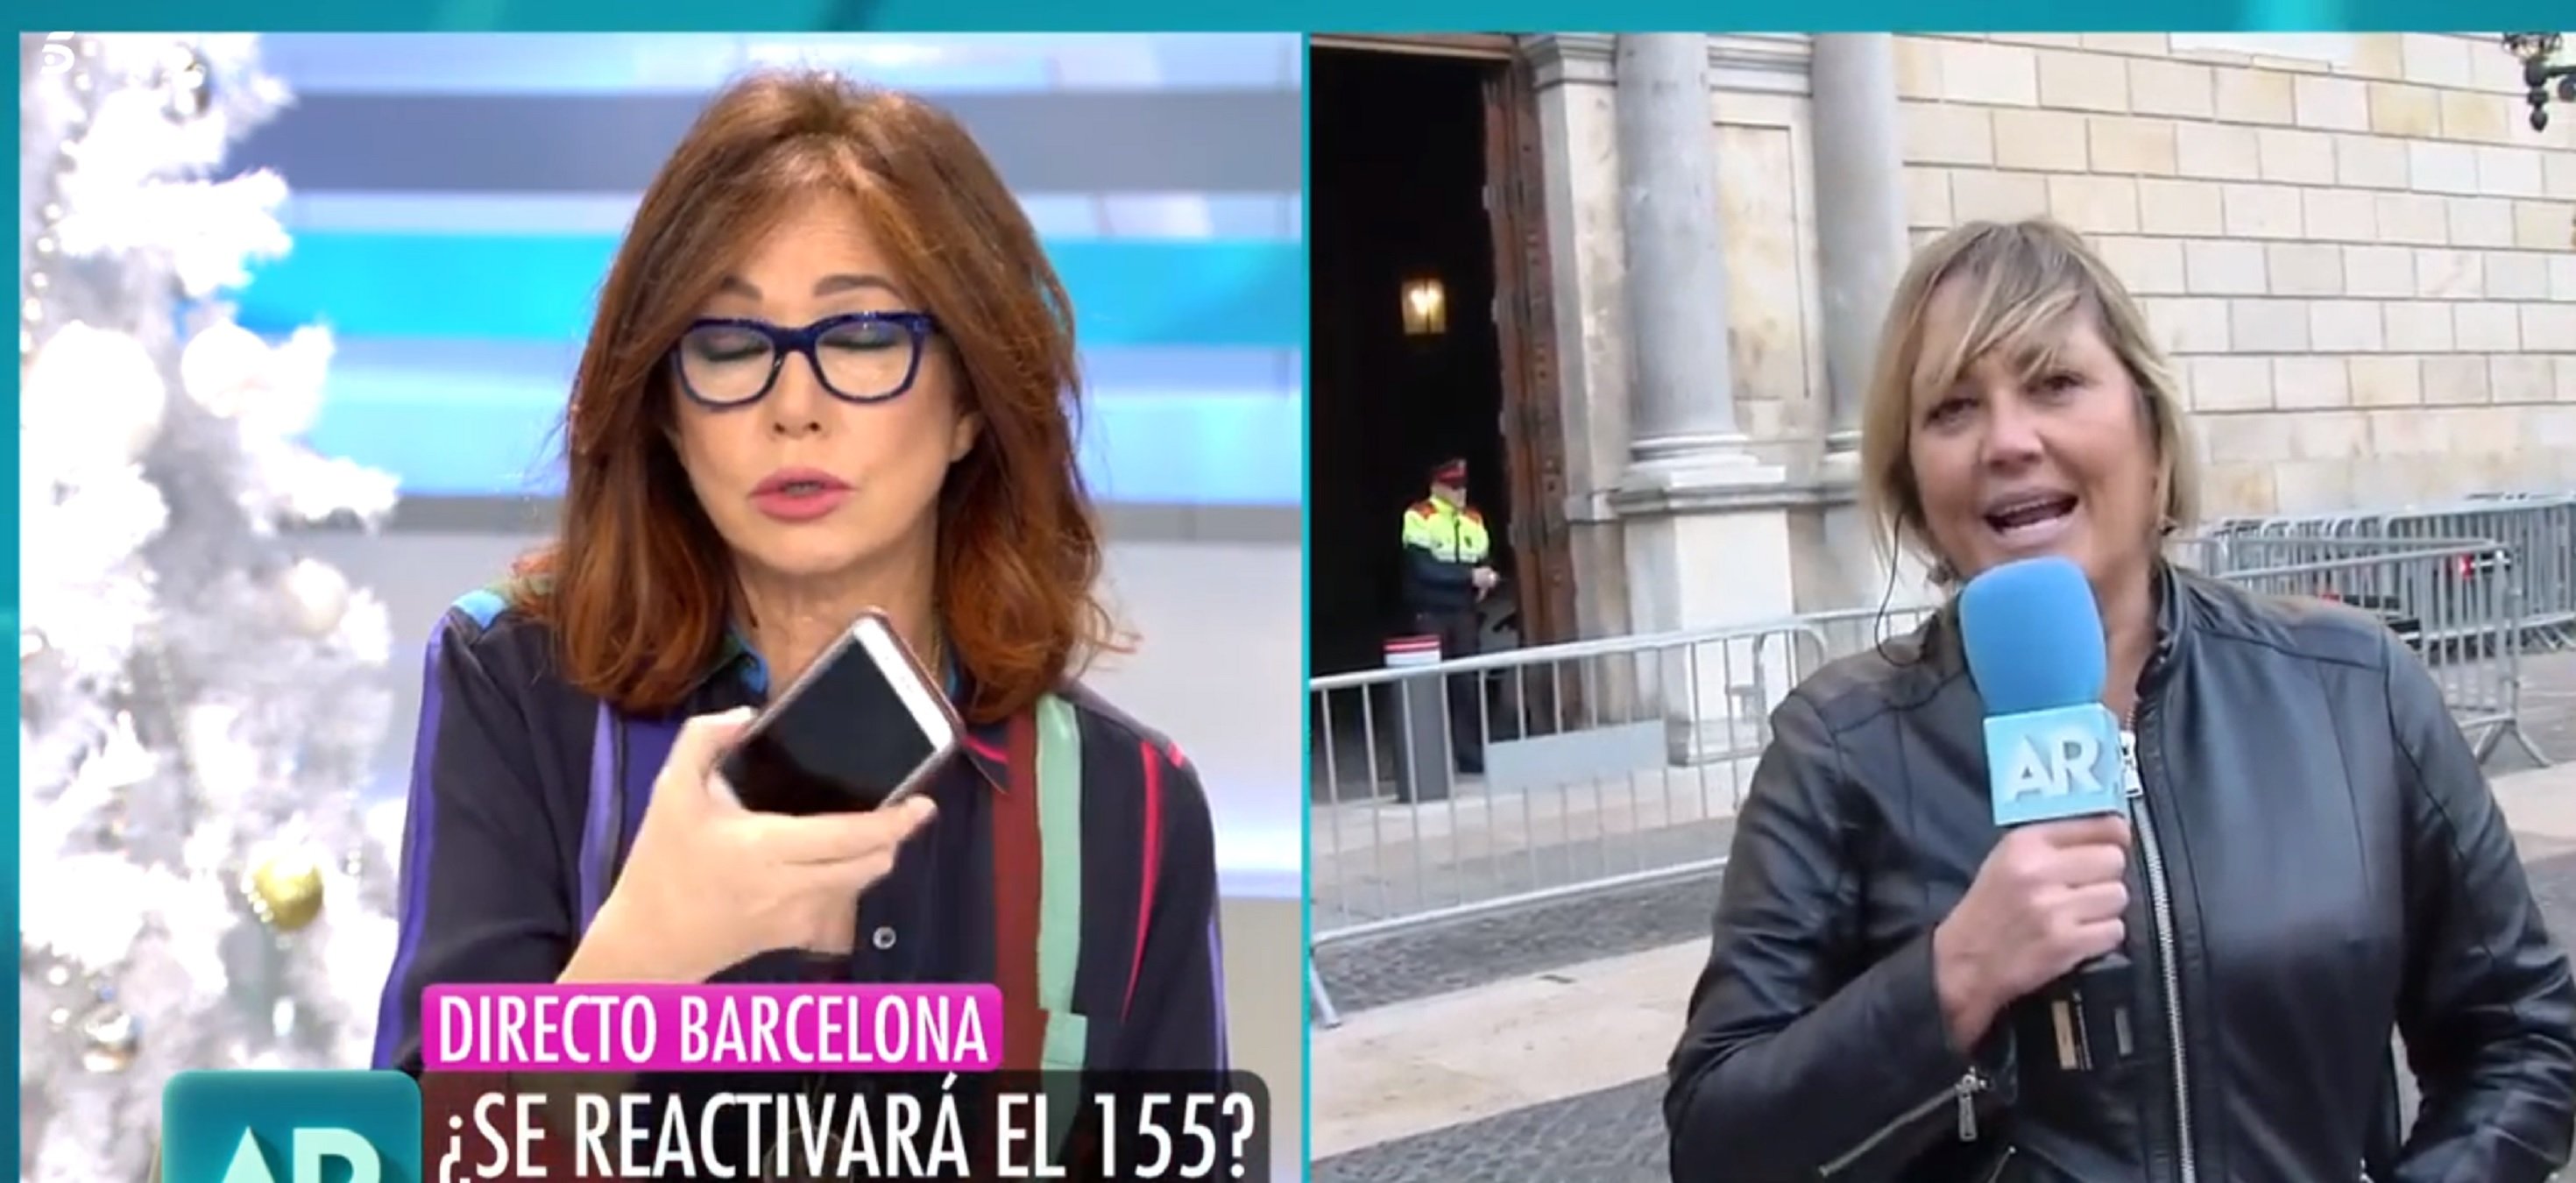 Ana Rosa insulta Torra i desafia els catalans: "Y ahora enviadme mensajes"